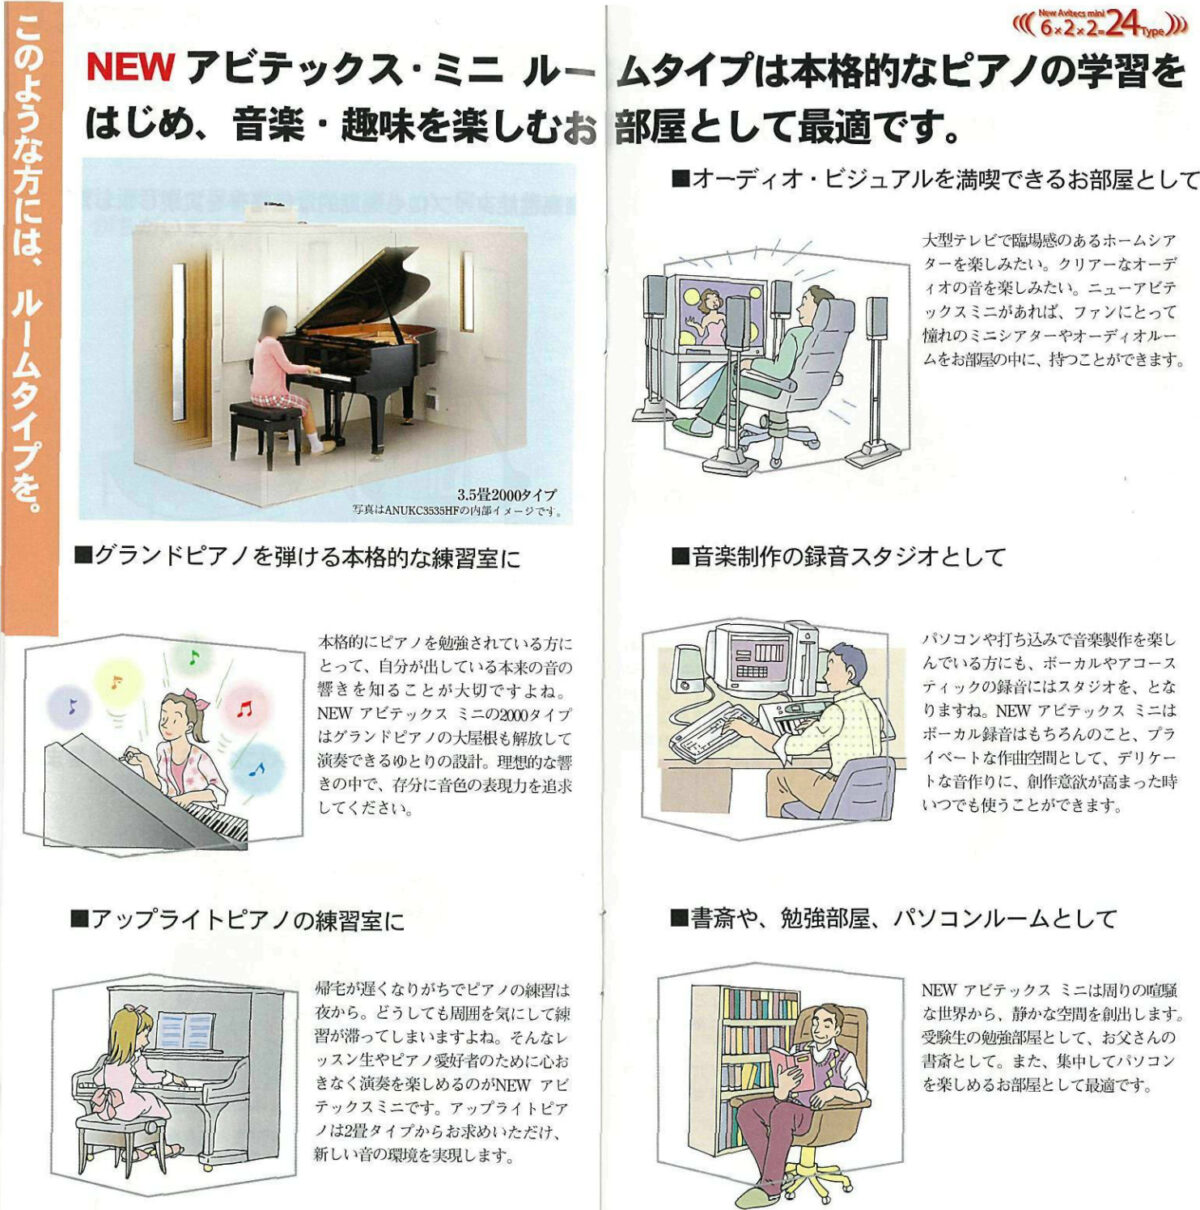 このような方には、ルームタイプを。
7
(((6x2x2-24Type)))
NEW アビテックス･ミニルームタイプは本格的なピアノの学習を
はじめ、 音楽 趣味を楽しむお部屋として最適です。
■オーディオ・ビジュアルを満喫できるお部屋として
3.52000タイプ
写真はANUKC363の内部イメージです。
■グランドピアノを弾ける本格的な練習室に
本格的にピアノを勉強されている方に
とって、 自分が出している本来の音の
響きを知ることが大切ですよね。
NEW アビテックス ミニの2000タイプ
はグランドピアノの大屋根も解放して
演奏できるゆとりの設計。 理想的な
きの中で、存分に音色の表現力を追求
してください。
■アップライトピアノの練習室に
帰宅が遅くなりがちでピアノの練習は
夜から｡ どうしても周囲を気にして練
が滞ってしまいますよね｡ そんなレ
ッスン生やピアノ愛好者のために心
きなく演奏を楽しめるのがNEW アビ
テックスミニです。 アップライトピア
ノは2畳タイプからお求めいただけ、
新しい音の環境を実現します。
大型テレビで臨場感のあるホームシア
ターを楽しみたい。 クリアーなオーデ
ィオの音を楽しみたい。ニューアビテ
ックスミニがあれば､ファンにとって
憧れのミニシアターやオーディオルー
ムをお部屋の中に、 持つことができます。
■音楽制作の録音スタジオとして
パソコンや打ち込みで音楽製作を楽し
んでいる方にも､ ボーカルやアコース
ティックの録音にはスタジオを、 とな
りますね。 NEW アビテックス ミニは
ボーカル録音はもちろんのこと、 プラ
イベートな作曲空間として､デリケー
トな音作りに、創作意欲が高まった時
いつでも使うことができます。
■書斎や、 勉強部屋、 パソコンルームとして
NEW アビテックス ミニは周りの喧騒
な世界から、静かな空間を創出します。
受験生の勉強部屋として､お父さんの
書斎として。 また、集中してパソコン
を楽しめるお部屋として最適です。